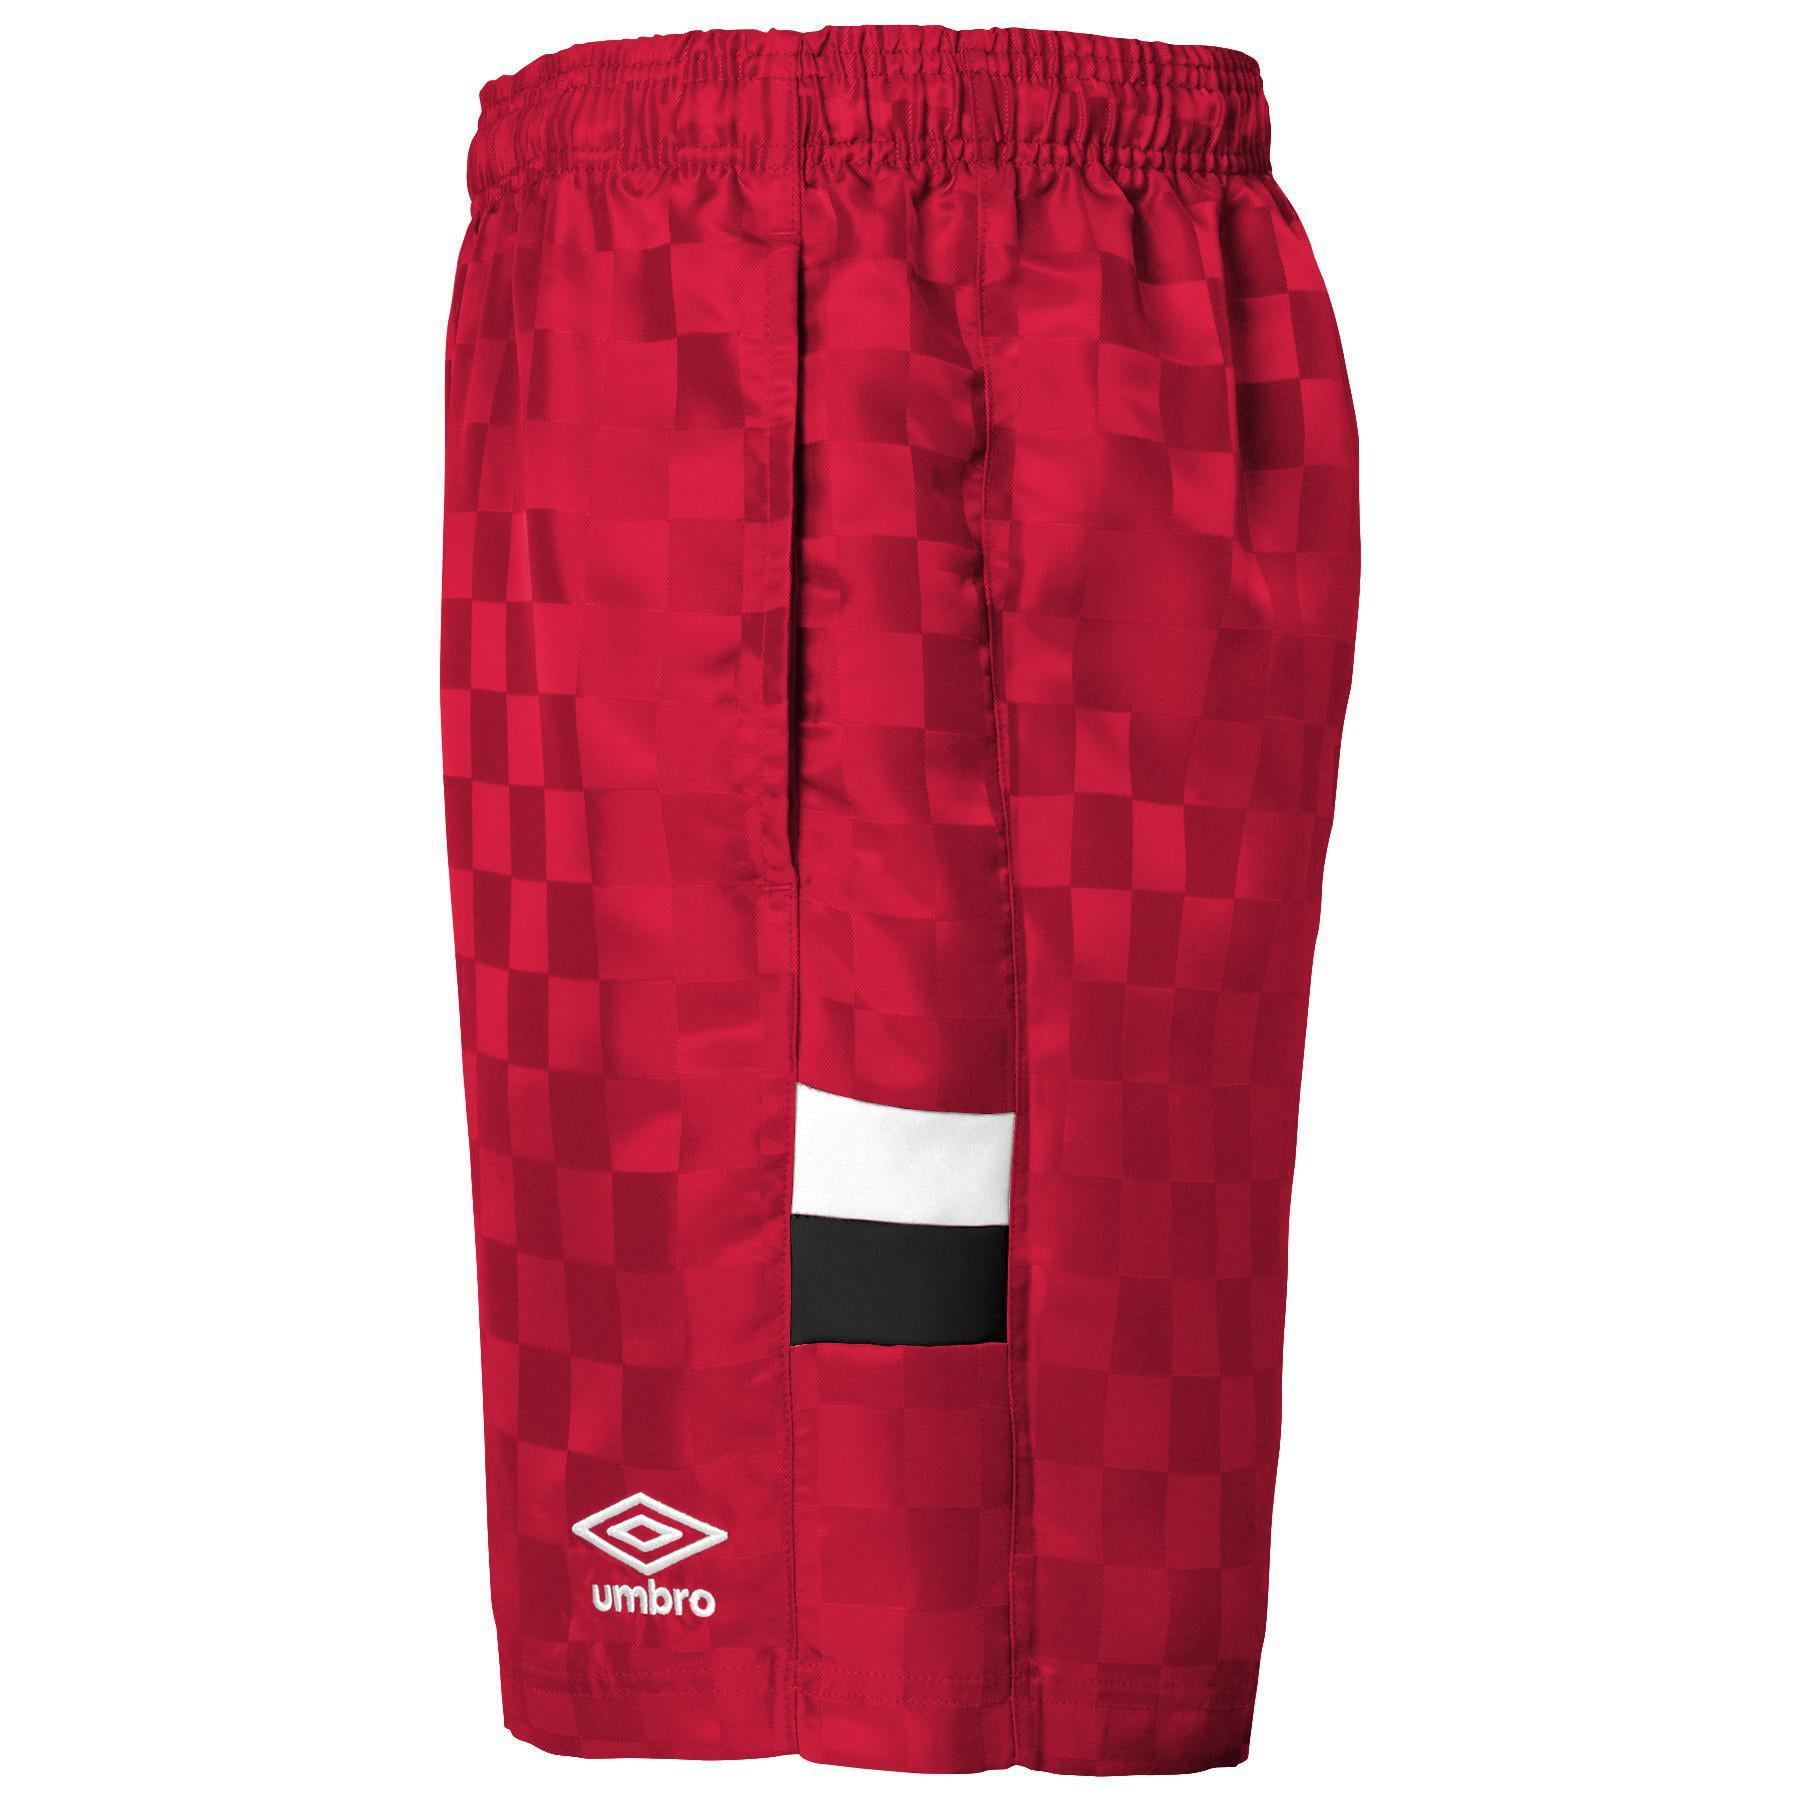 umbra soccer shorts